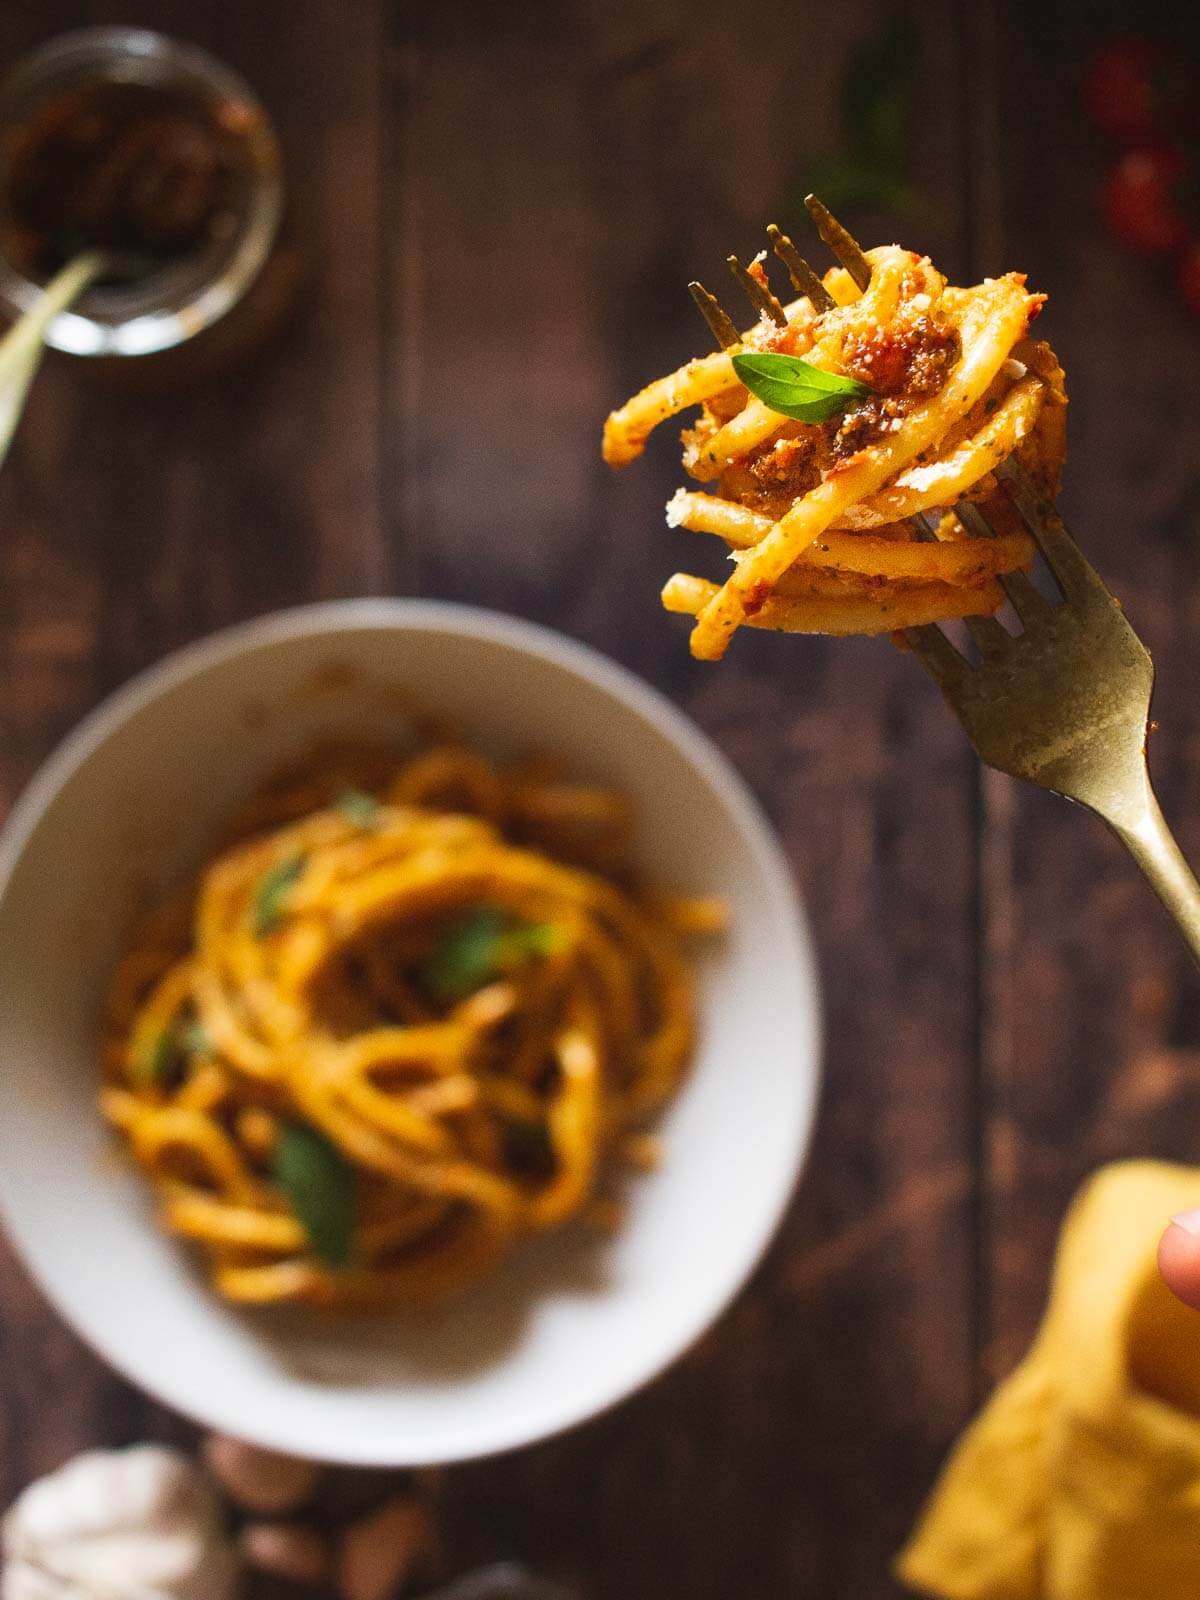 bucatini pasta in a fork holding a bite of sun-dried tomato pesto pasta